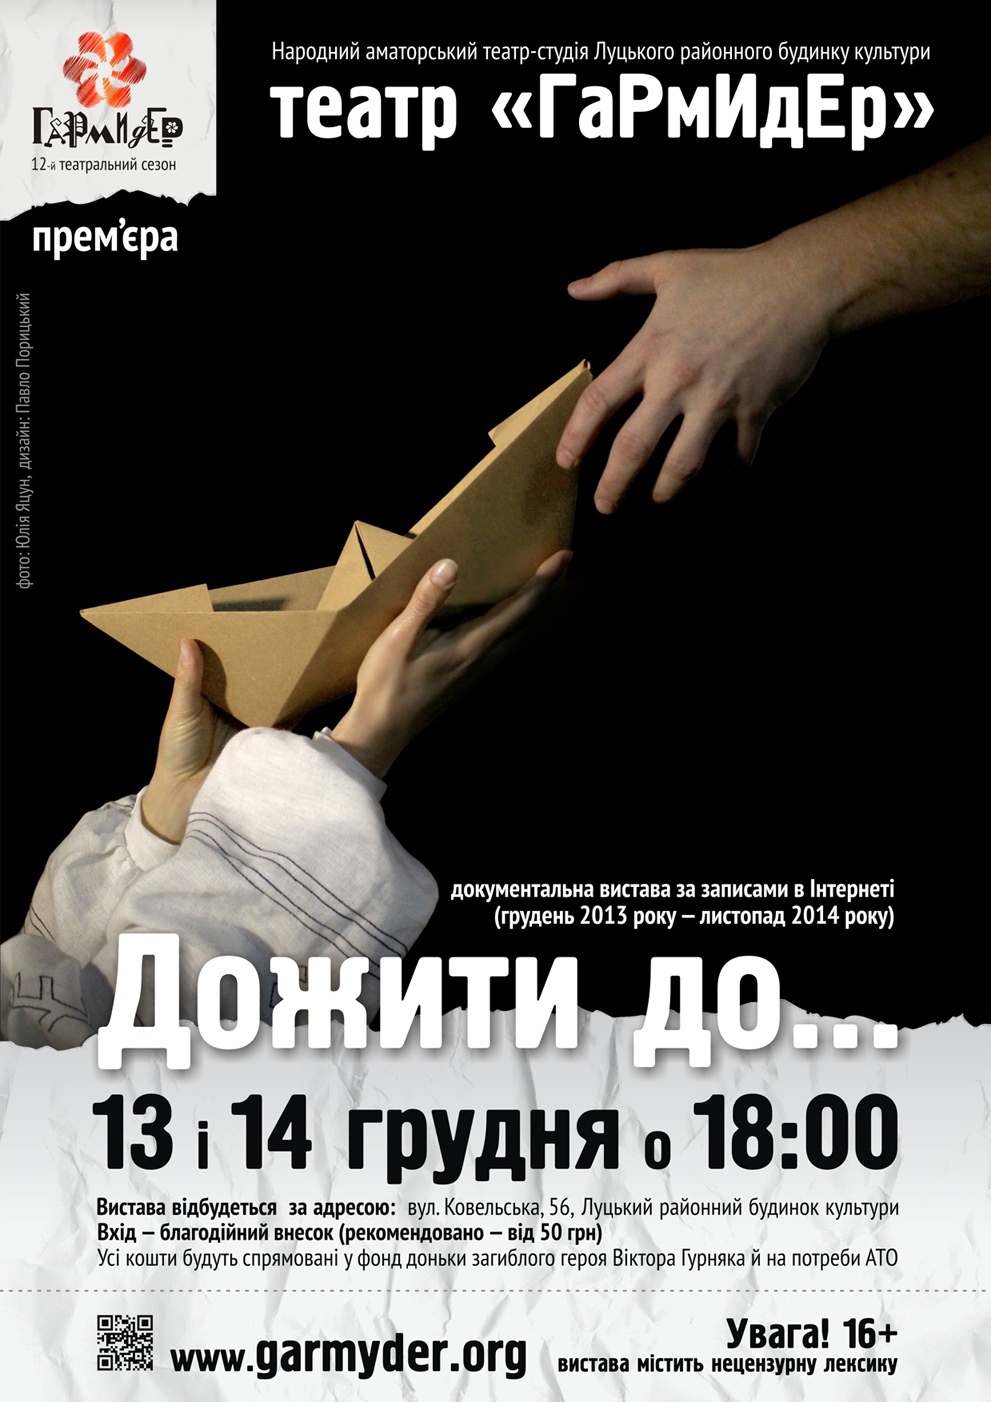 Волинський театр покаже виставу про революційний рік, побудовану на історіях з інтернет-користувачів